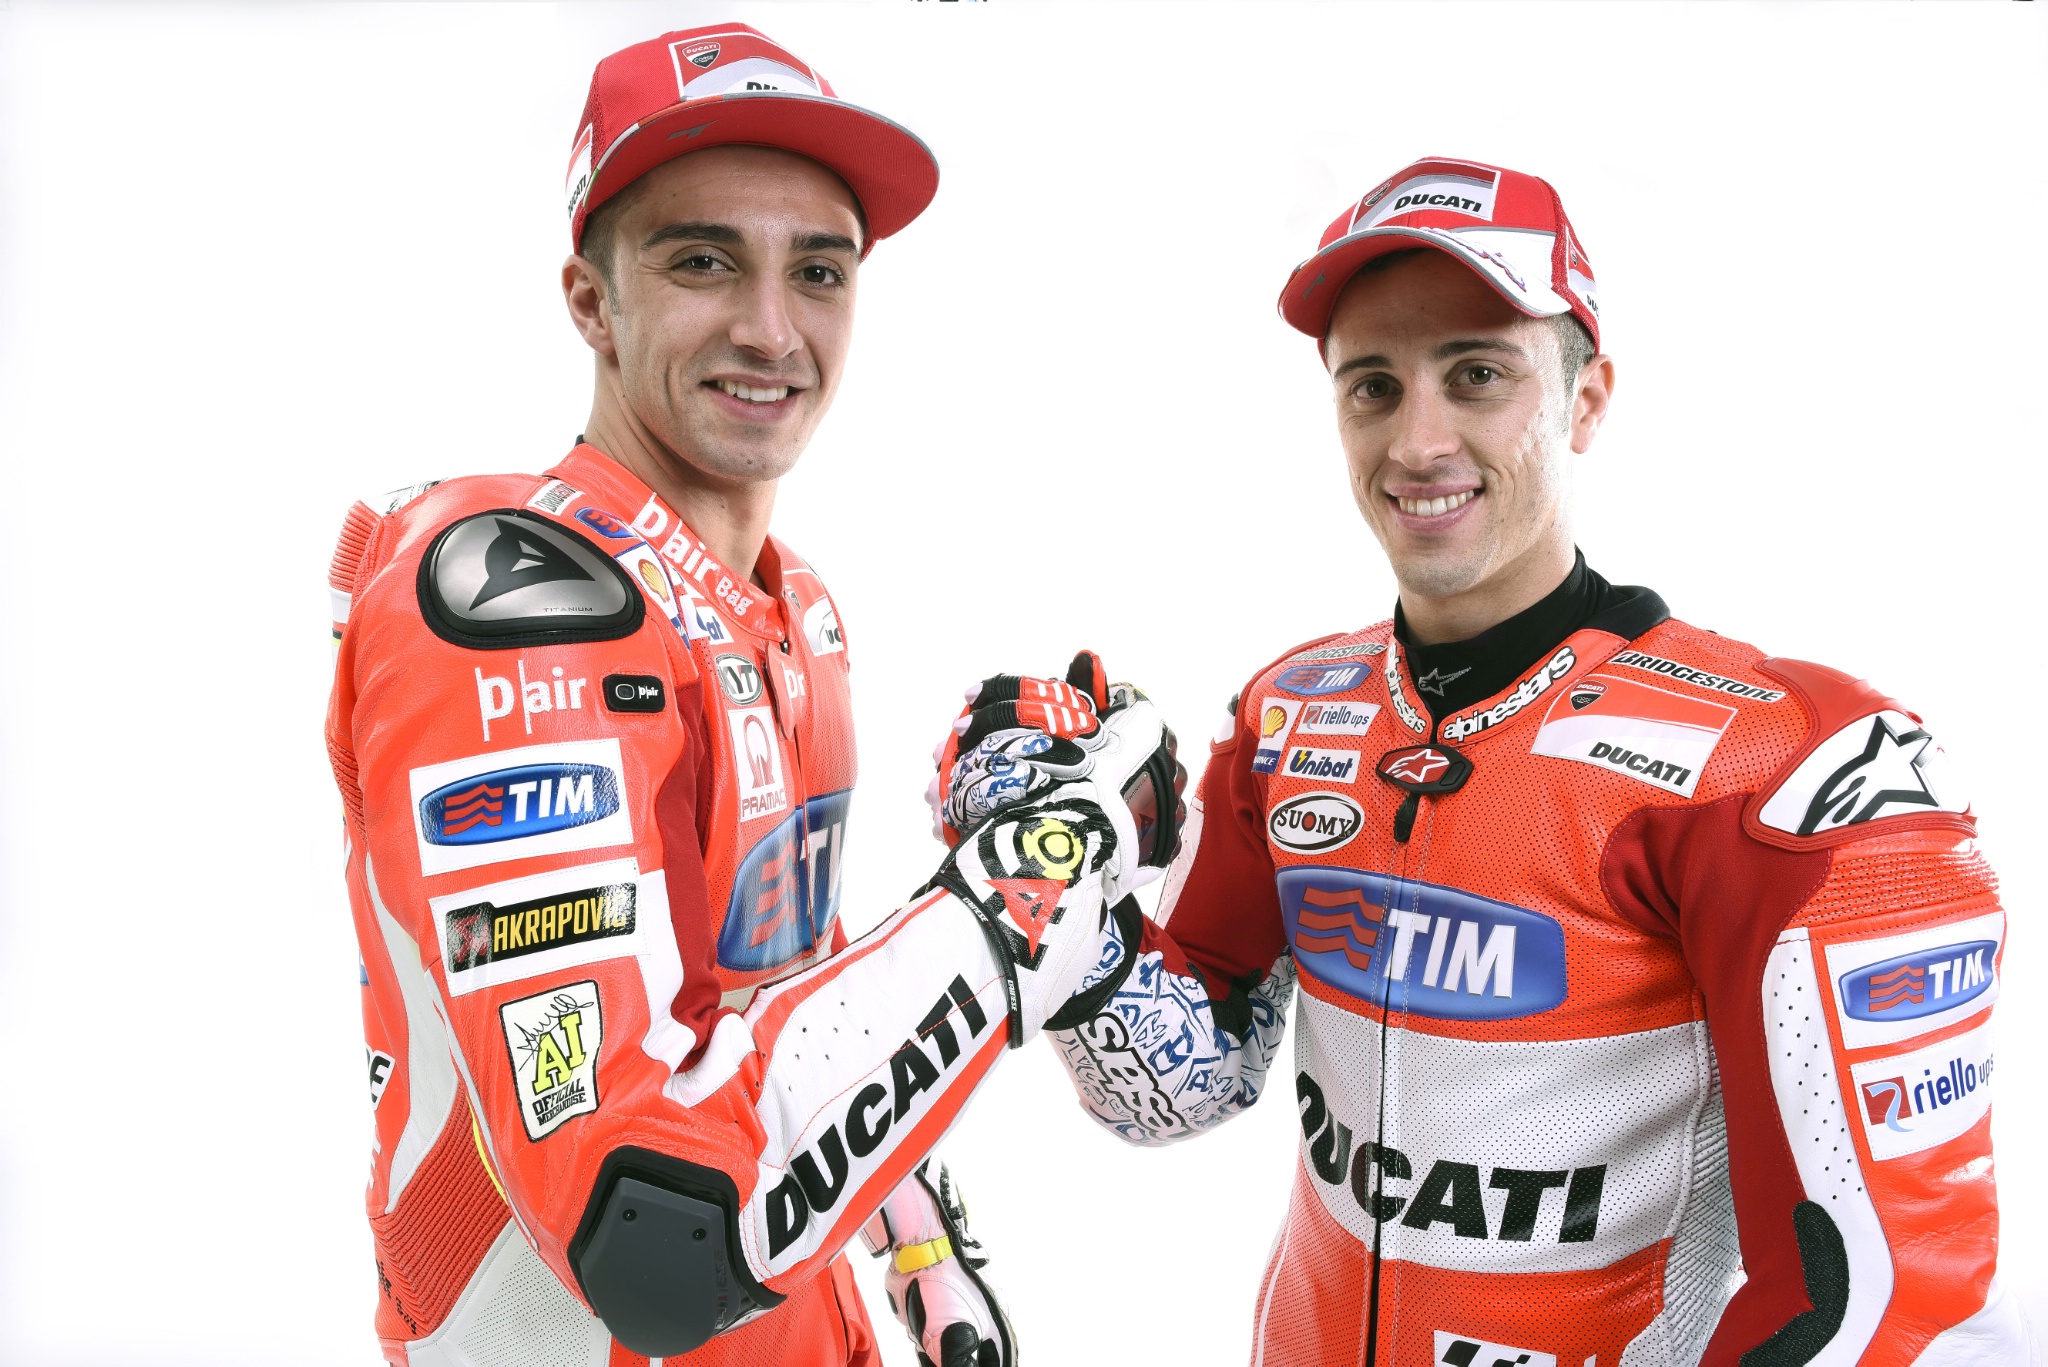 Iannone and Dovizioso, 2015 MotoGP. Image courtesy of